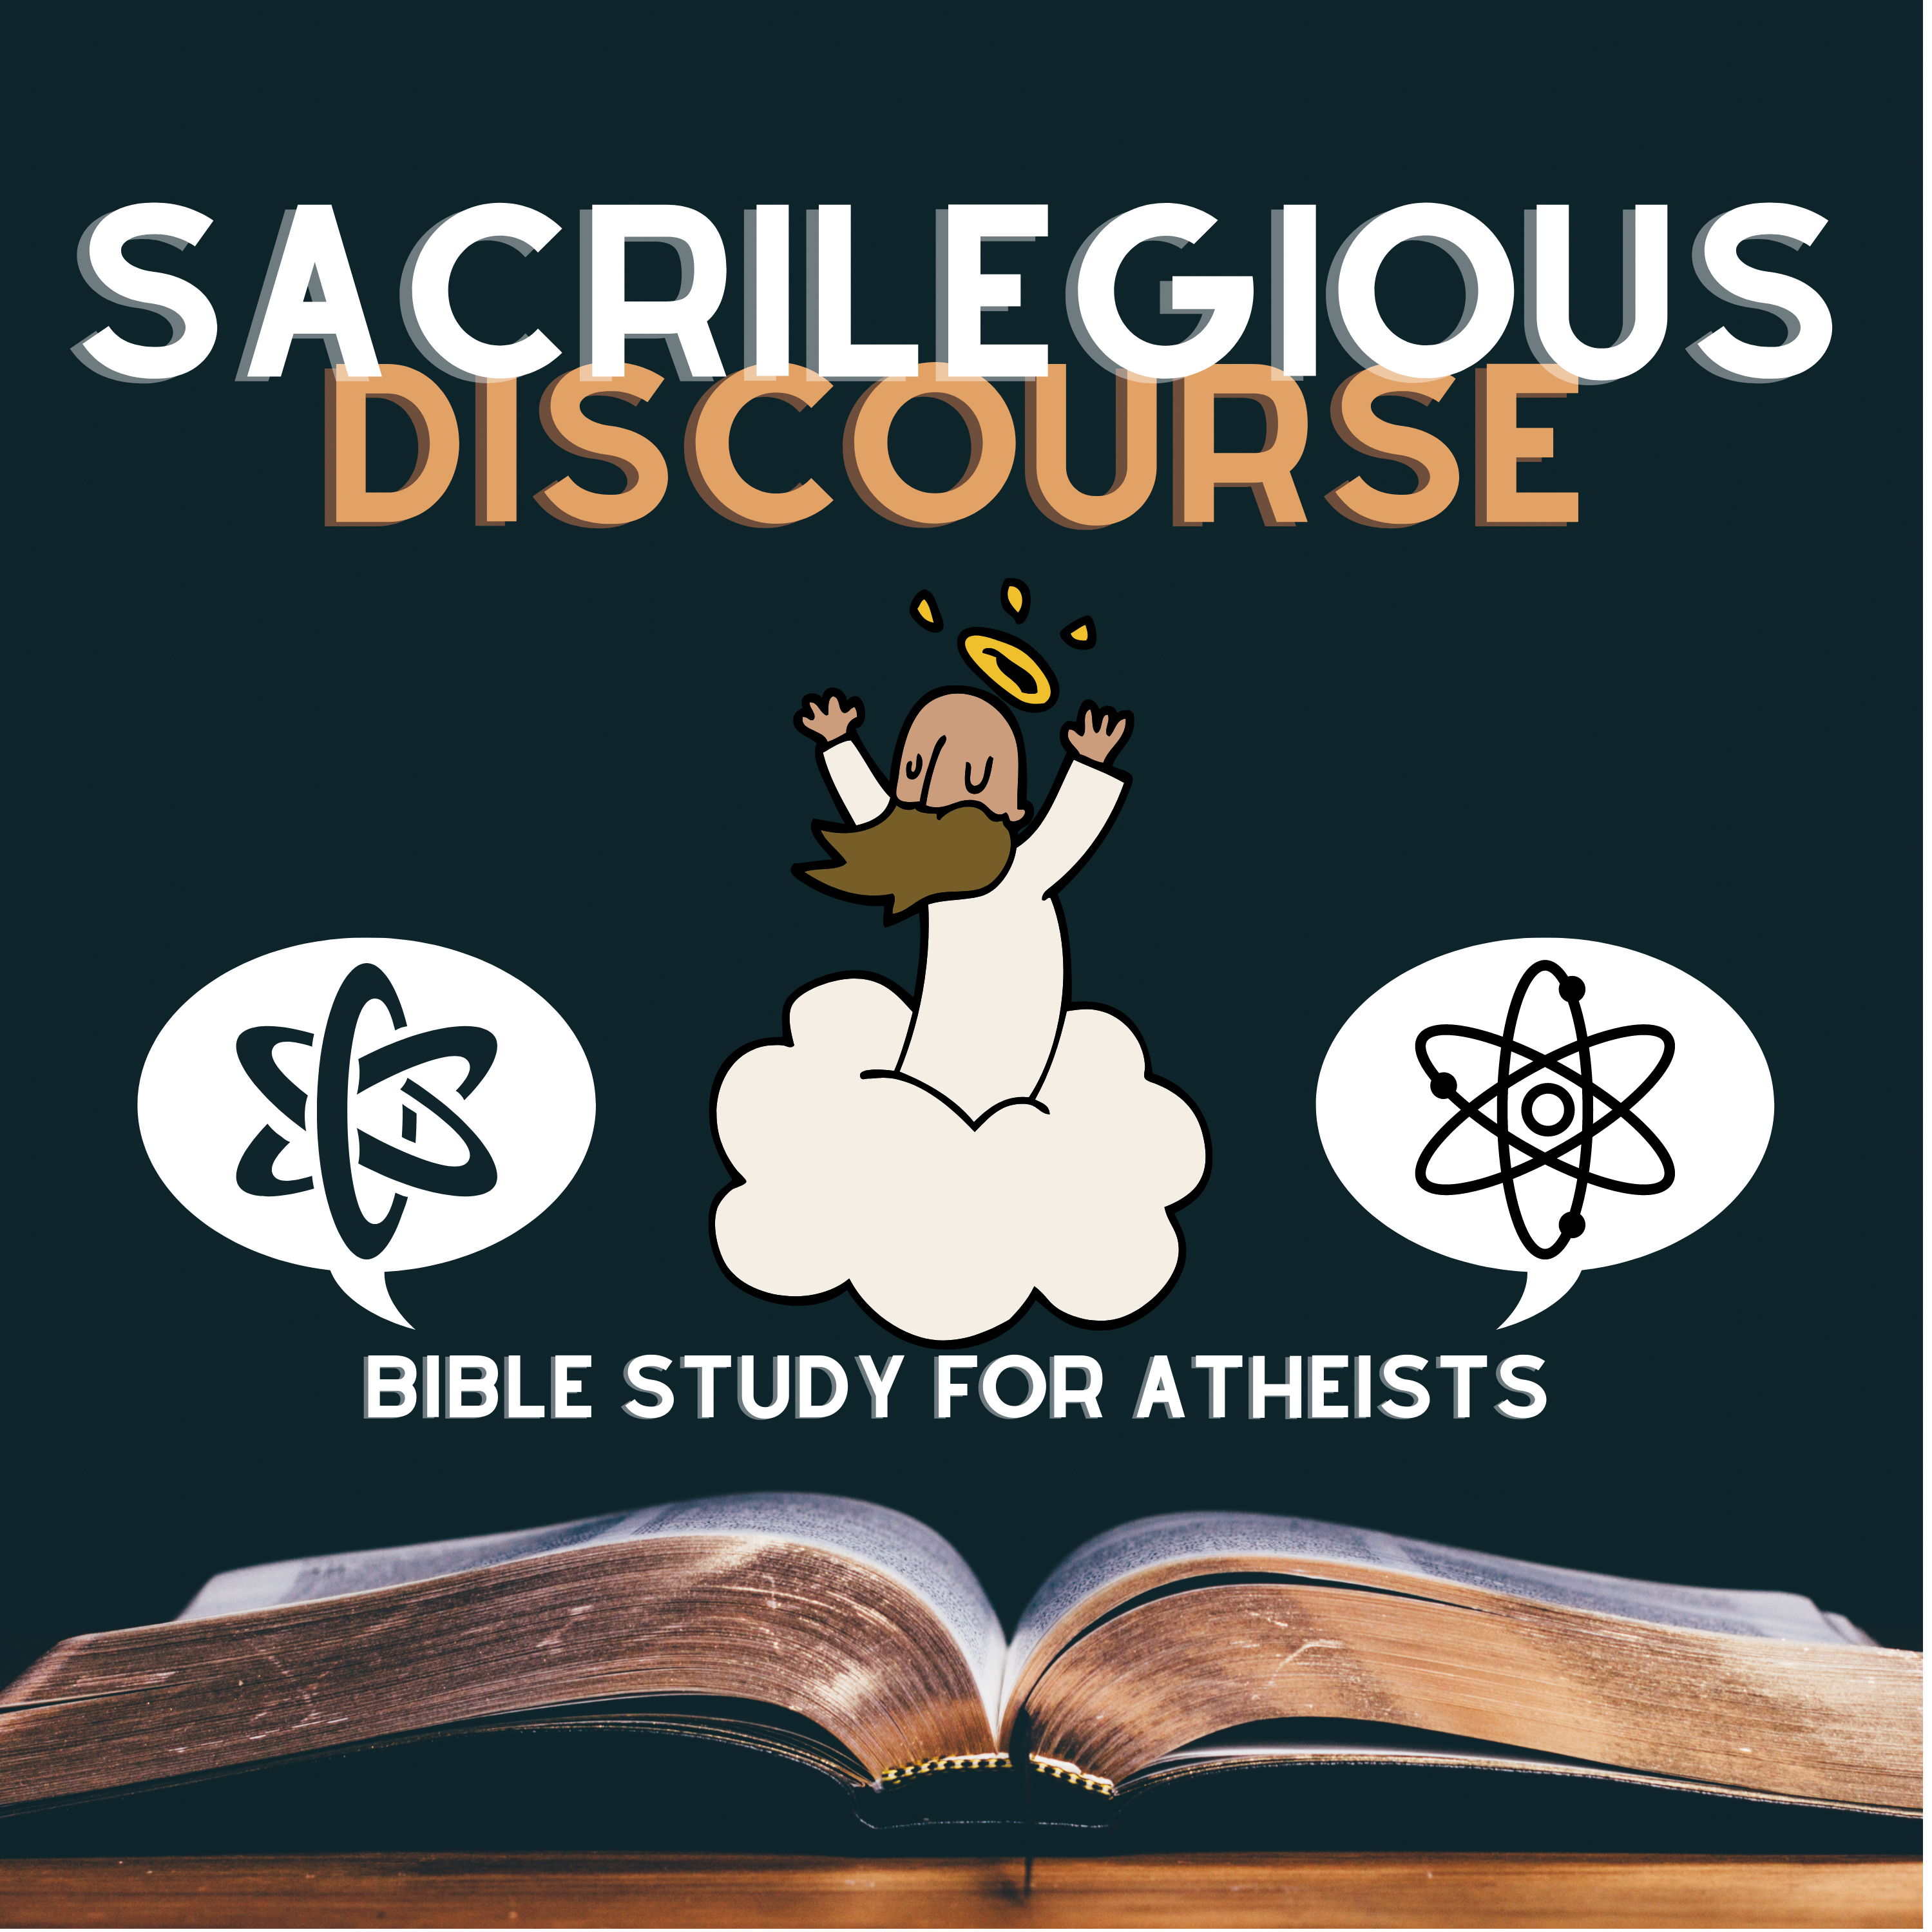 Sacrilegious Discourse - Bible Study for Atheists